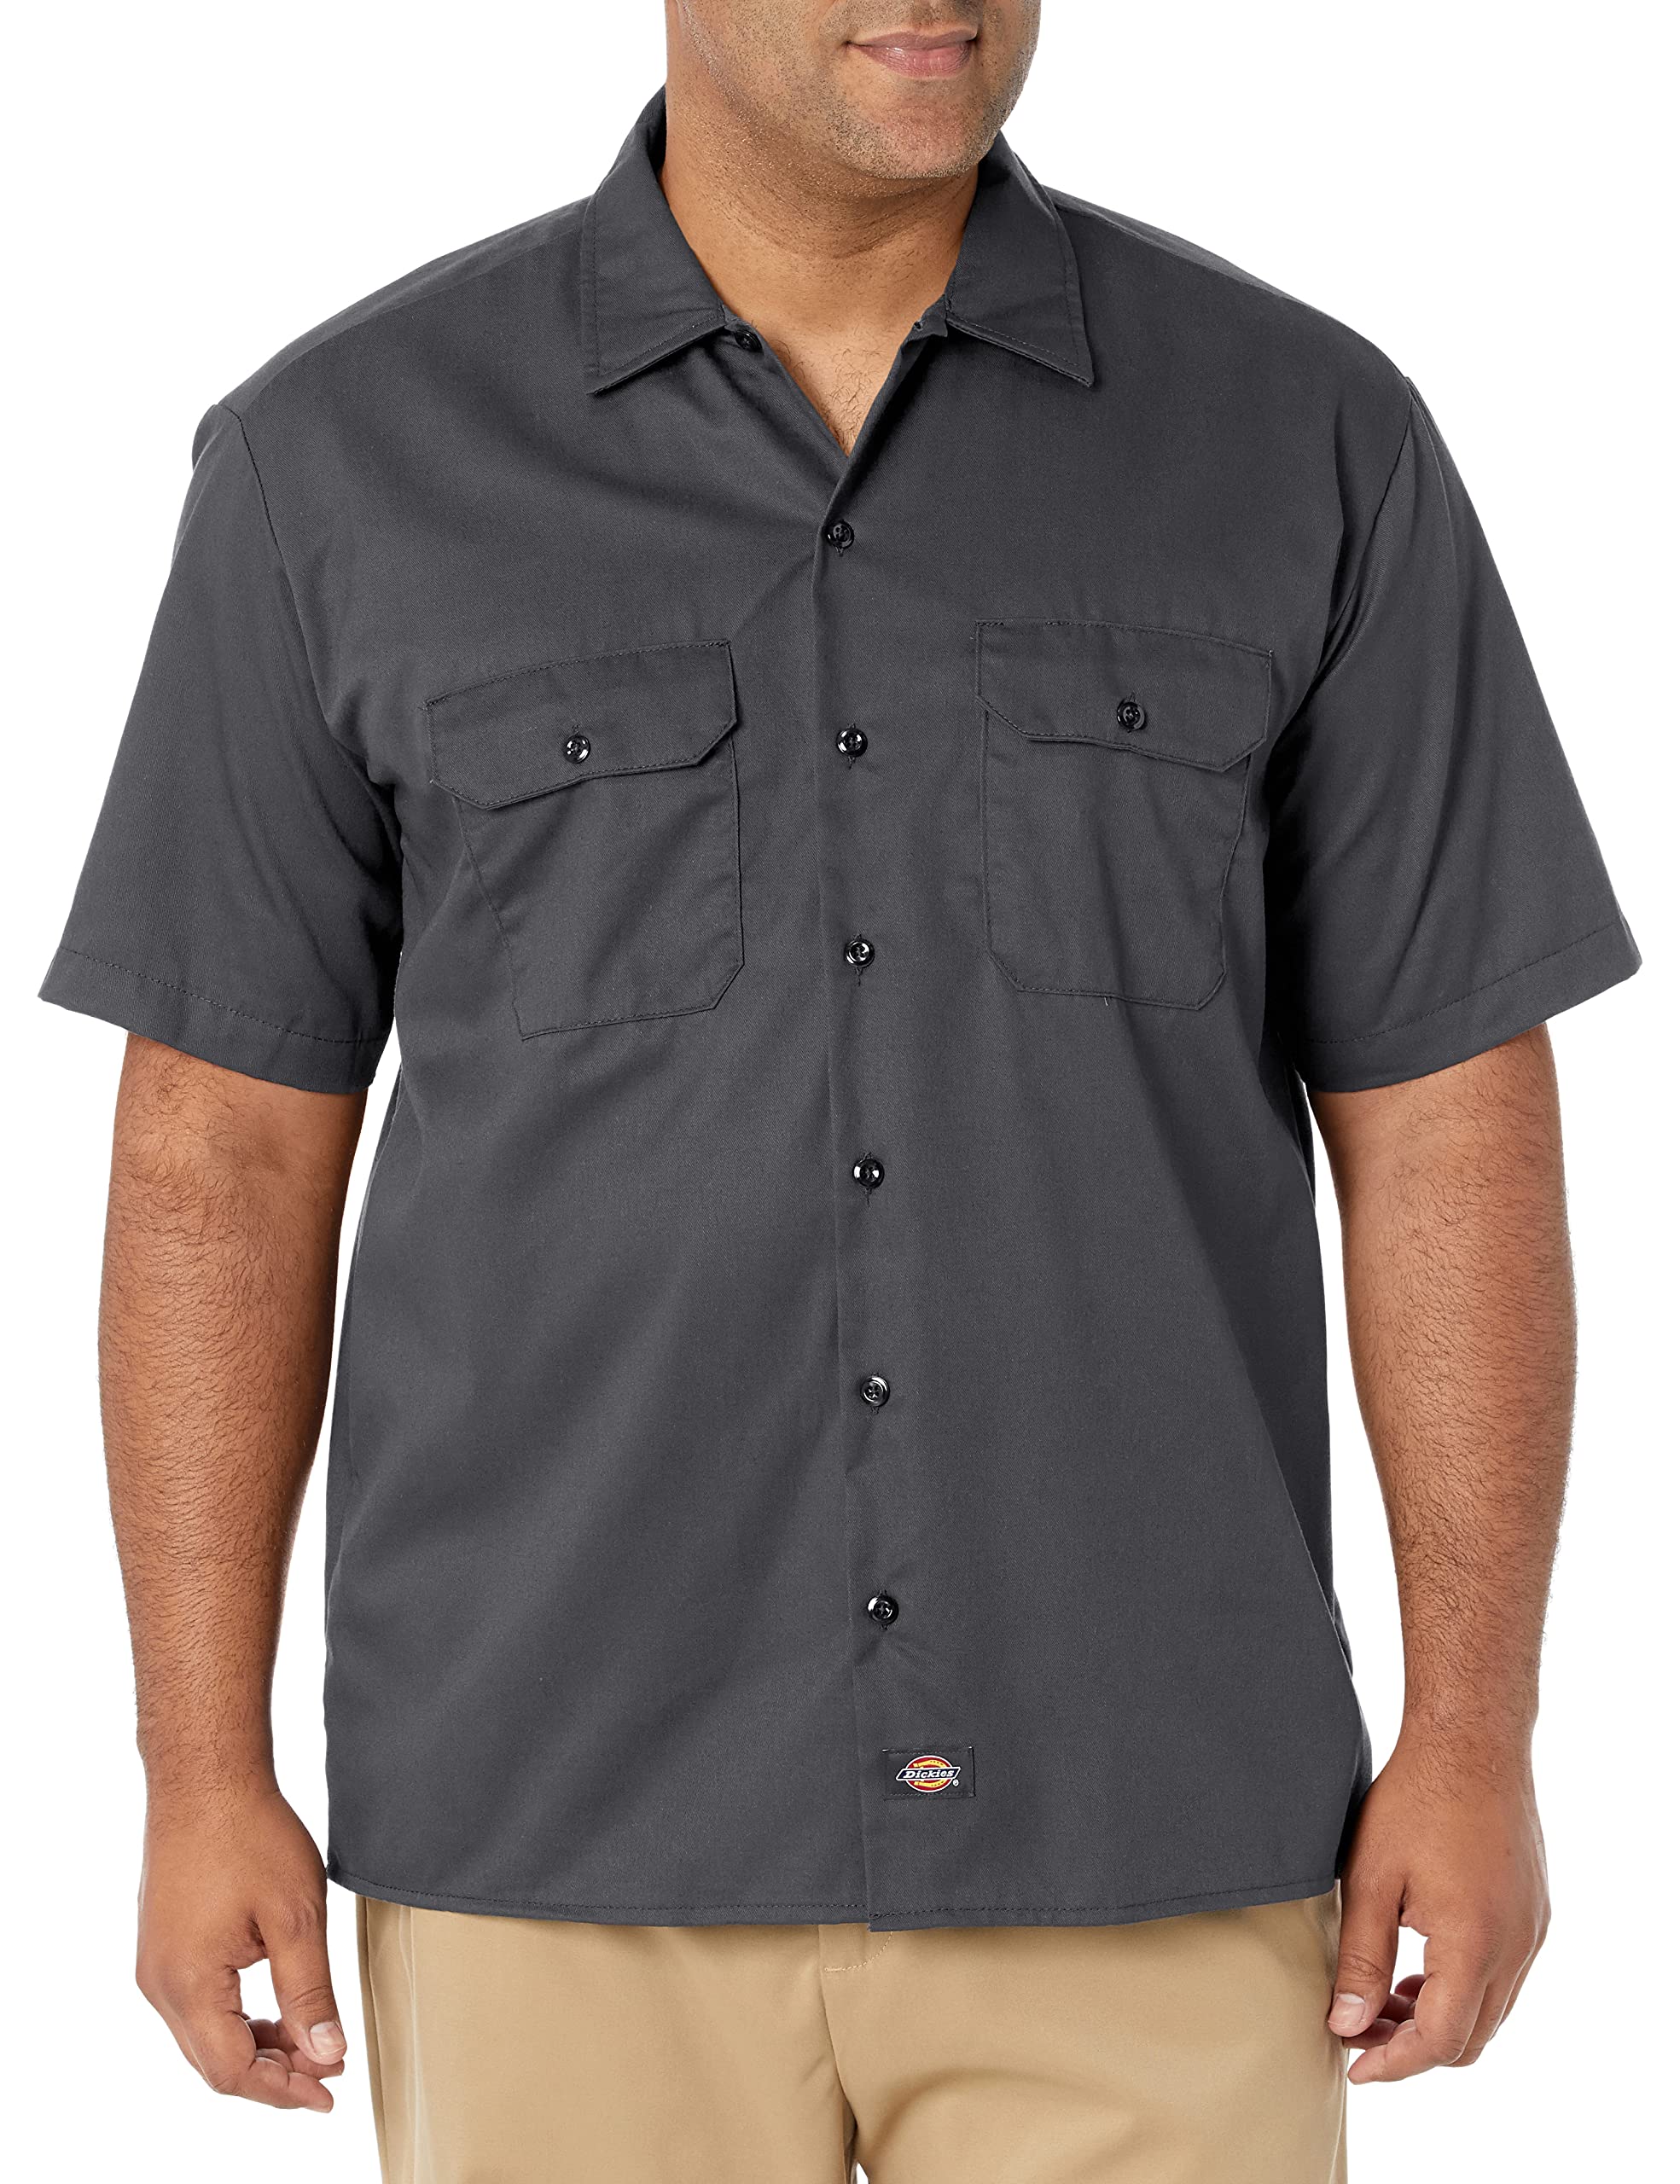 Dickies Herren Freizeithemd Work Shirt Short Sleeved, Charcoal Grey, XX-Large (Herstellergröße: XXL)